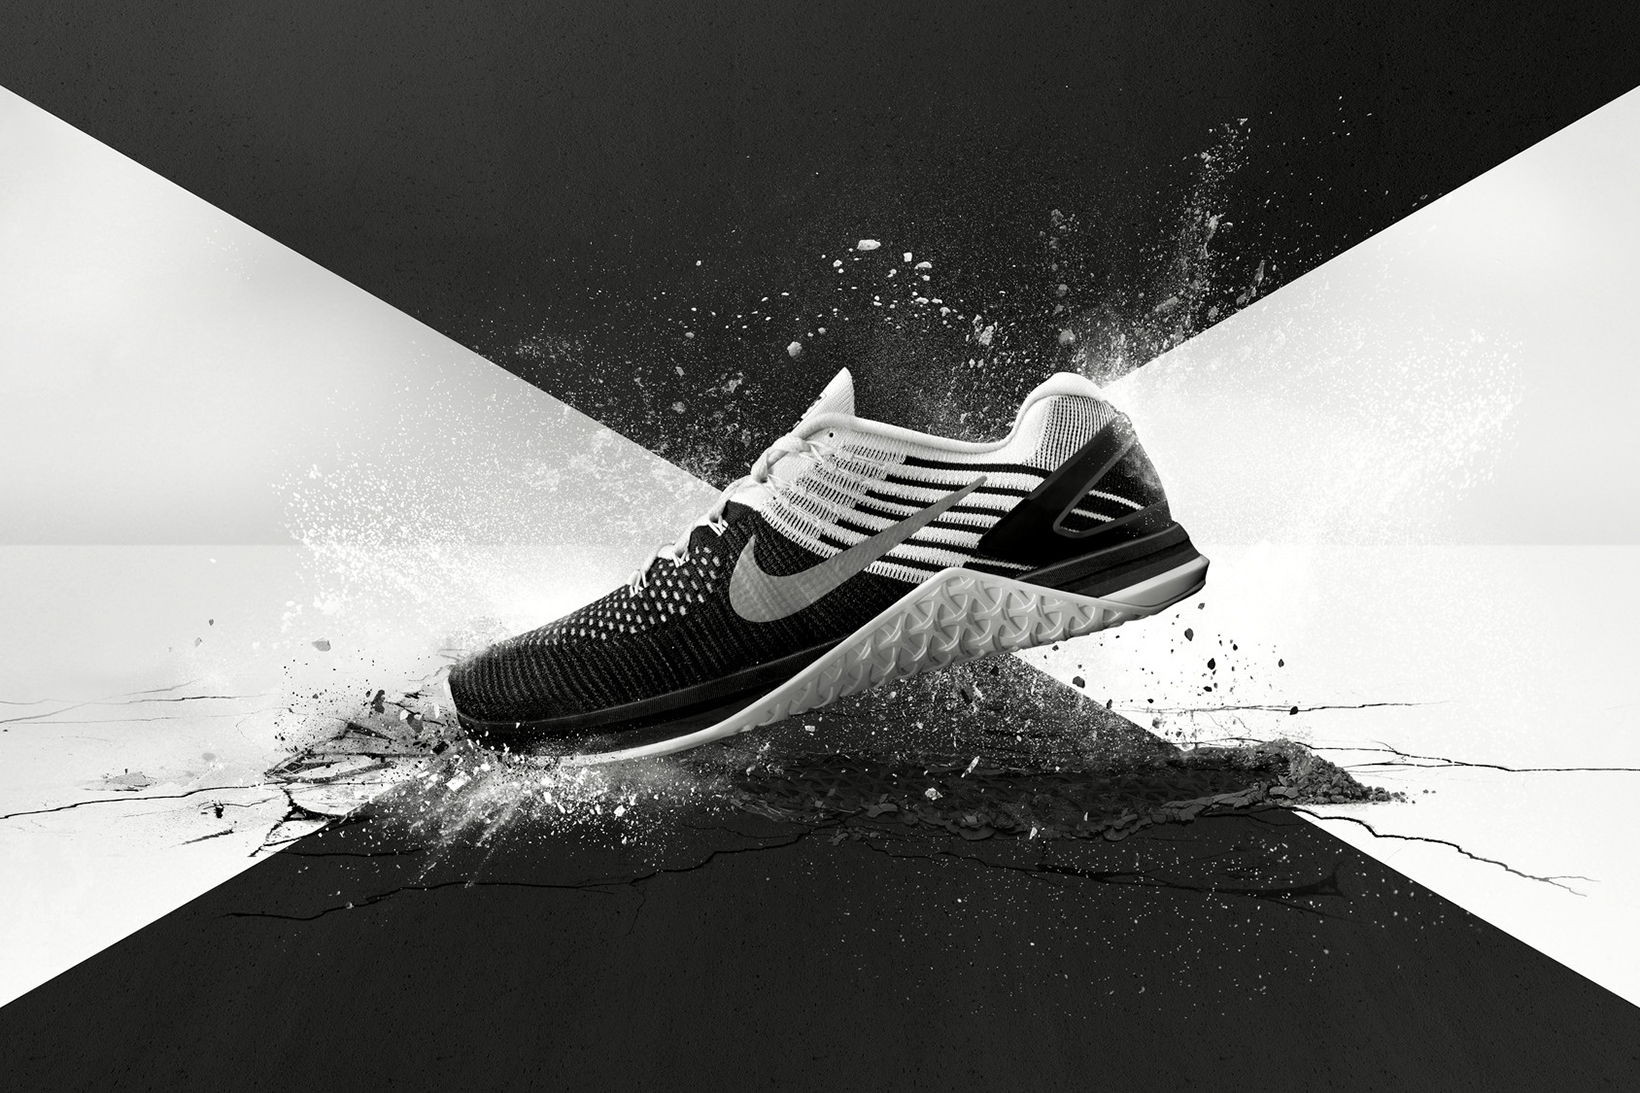 NIKE METCON THREAD - 7s out now | NikeTalk